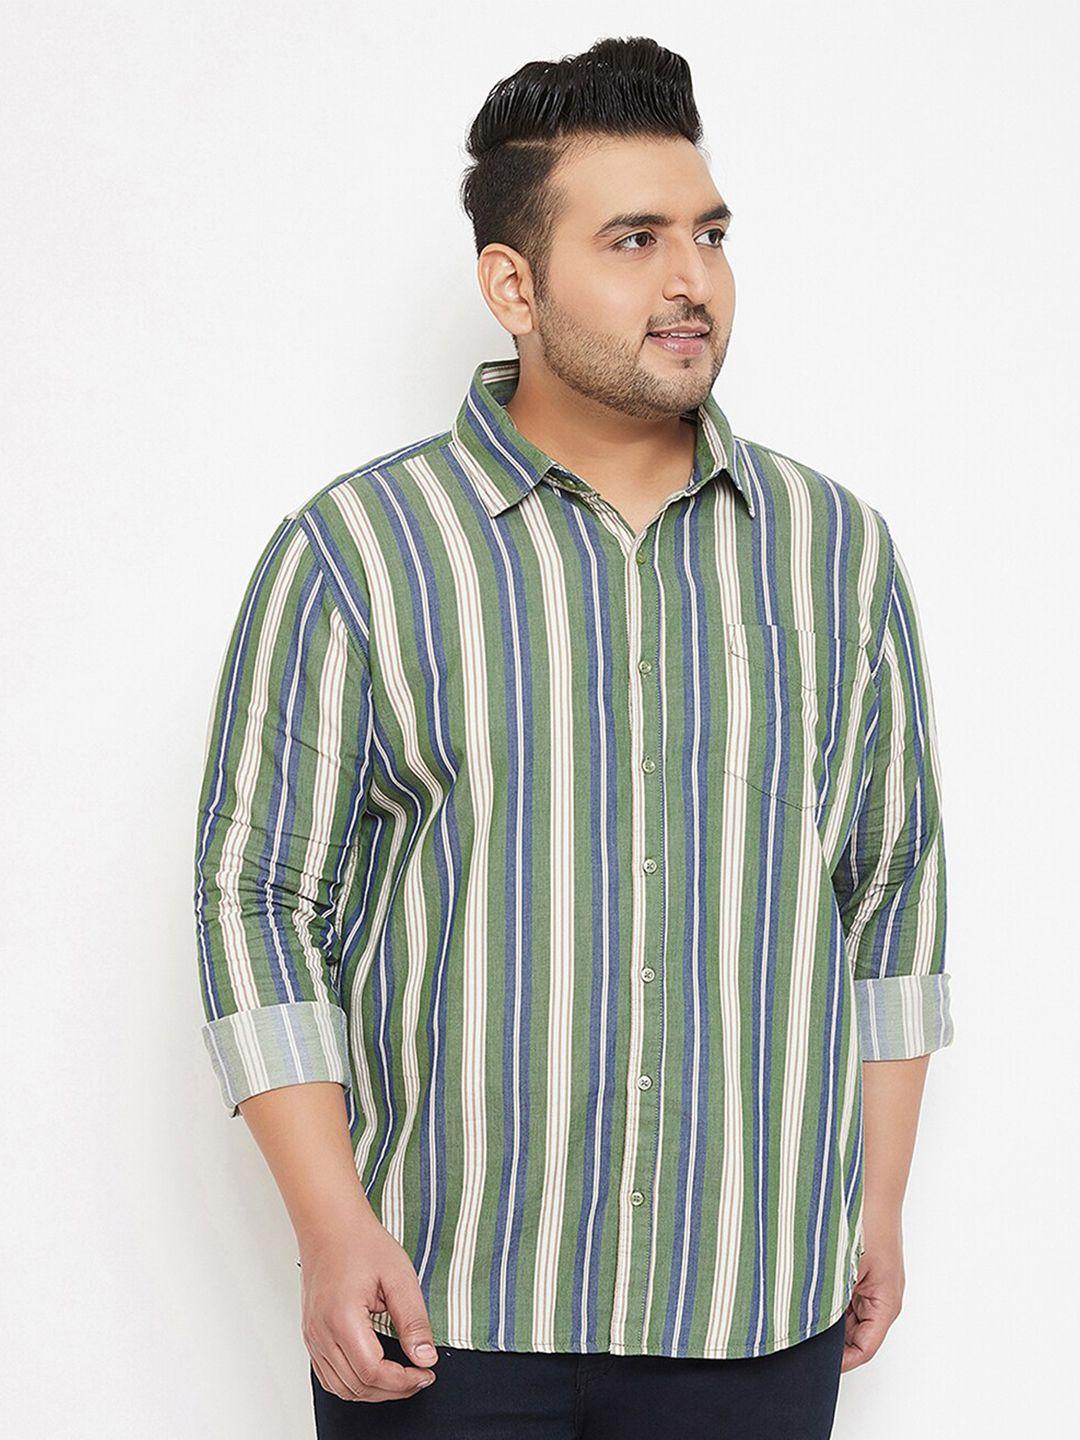 instafab-plus-men-cotton-plus-size-classic-striped-casual-shirt